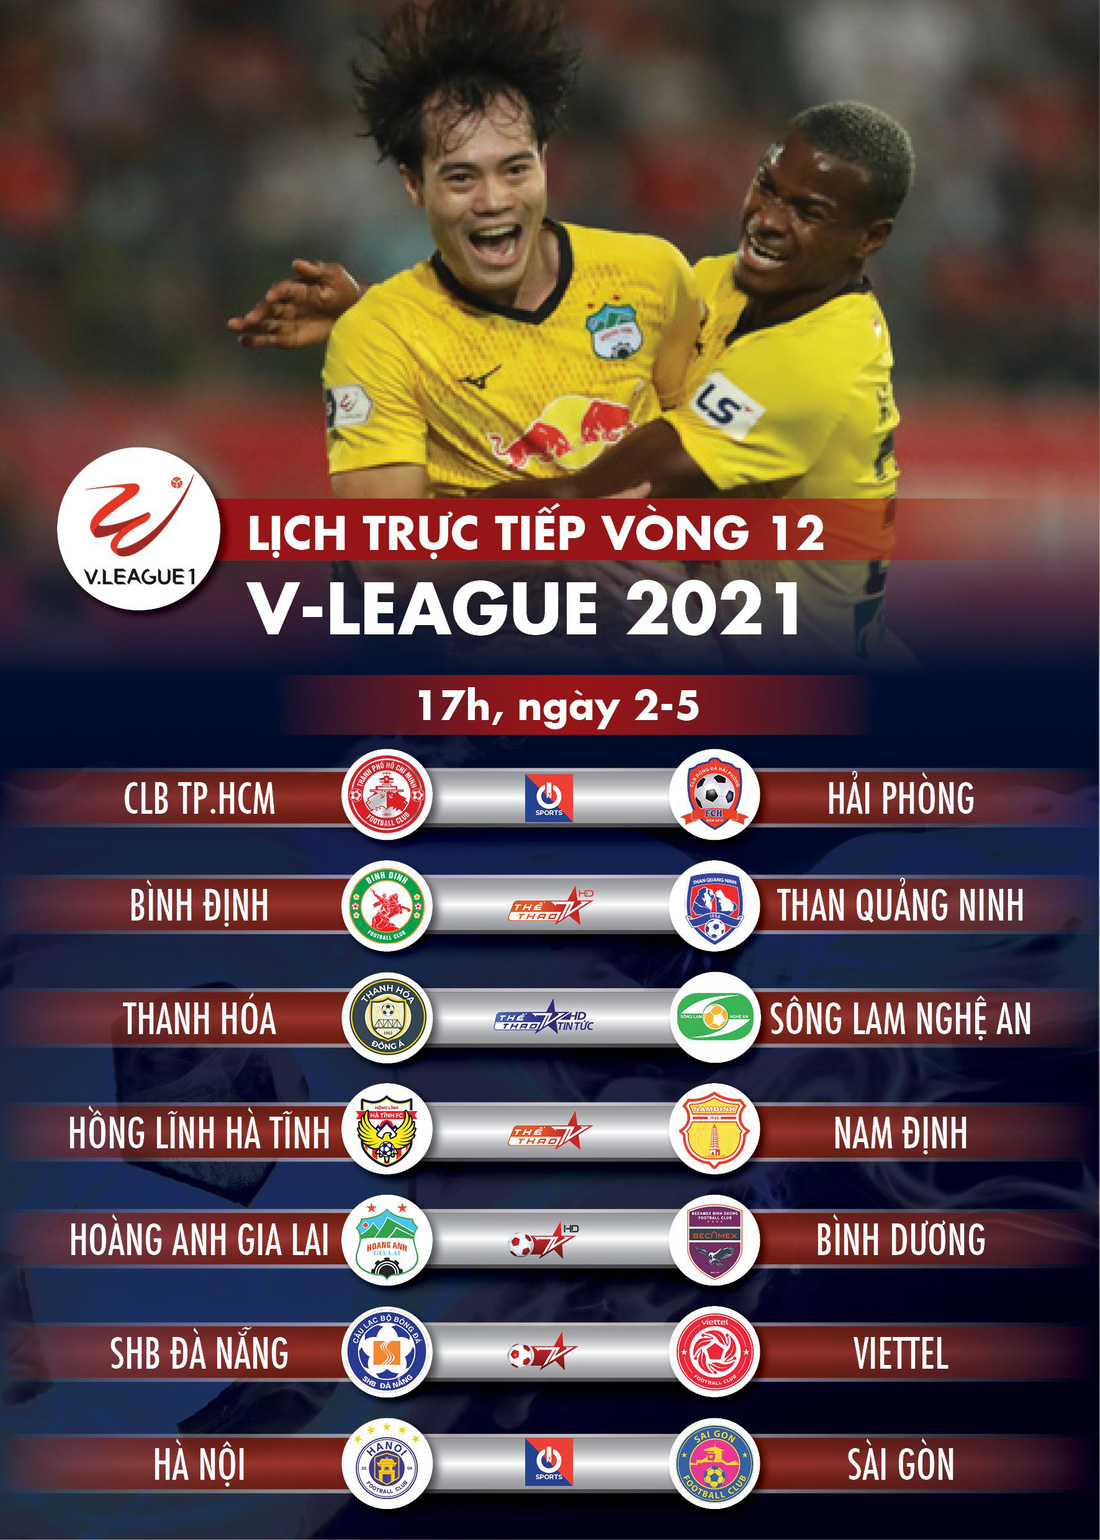 Lịch trực tiếp vòng 12 V-League 2021: HAGL - Bình Dương, Đà Nẵng - Viettel - Ảnh 1.